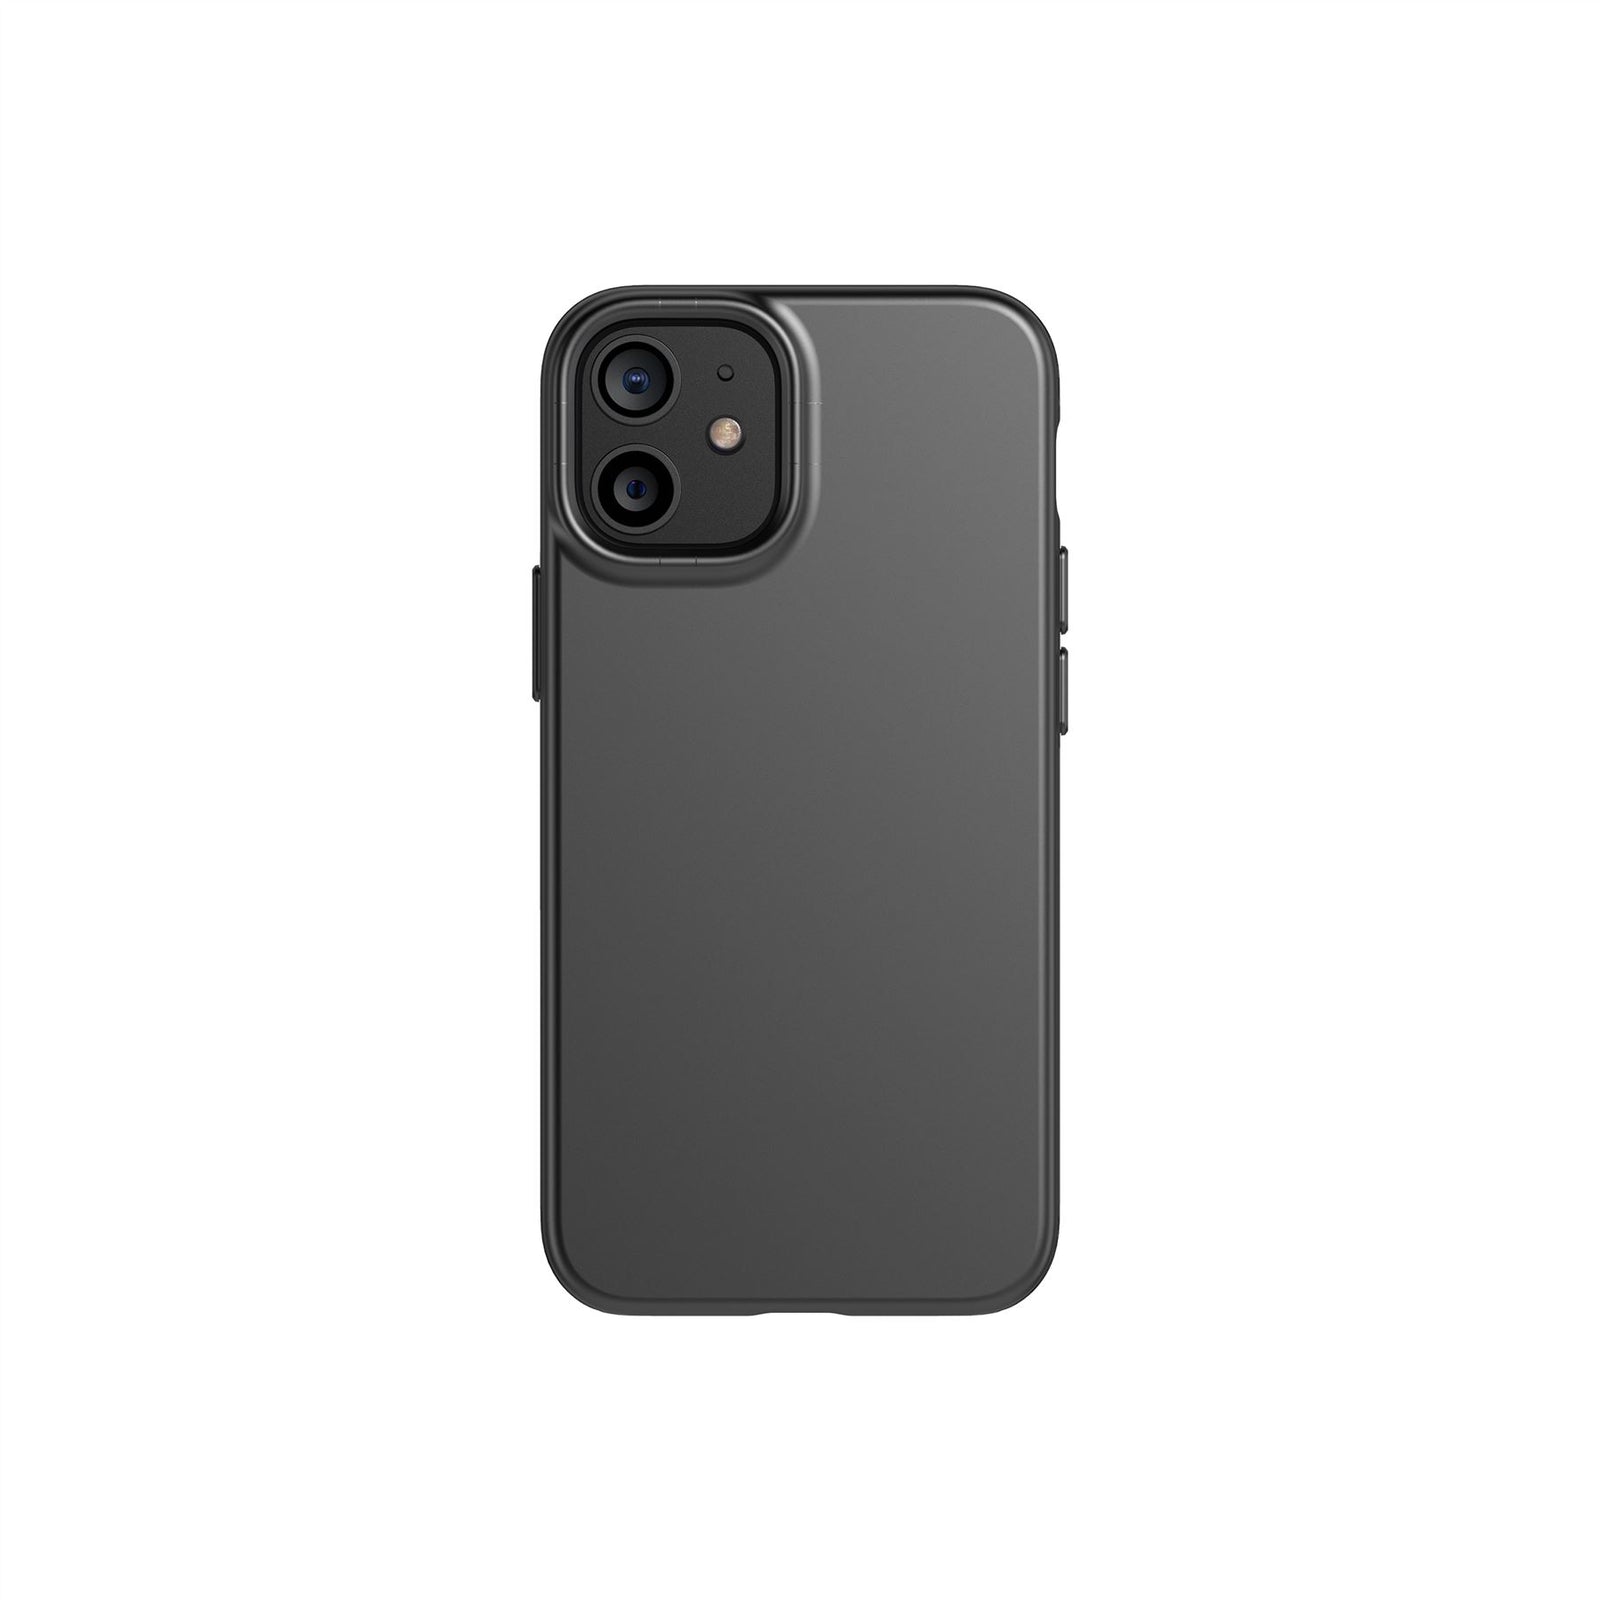 Evo Slim - Apple iPhone 12 mini Case - Charcoal Black